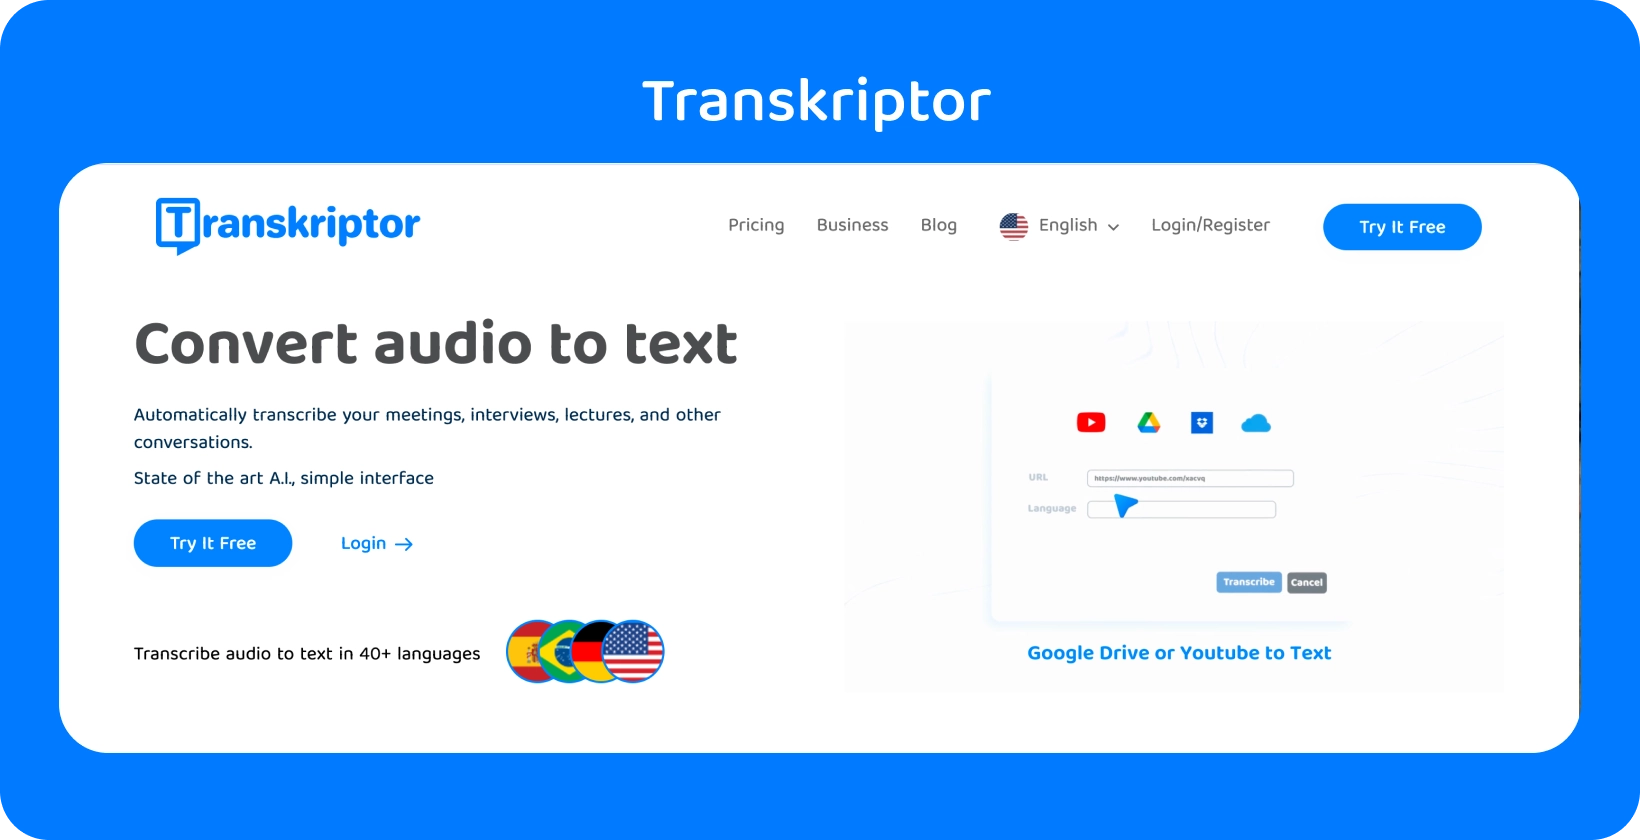 Transkriptor veebilehel mainitakse funktsiooni "Teisenda heli tekstiks", mis on valmis hõlpsaks transkriptsiooniks.